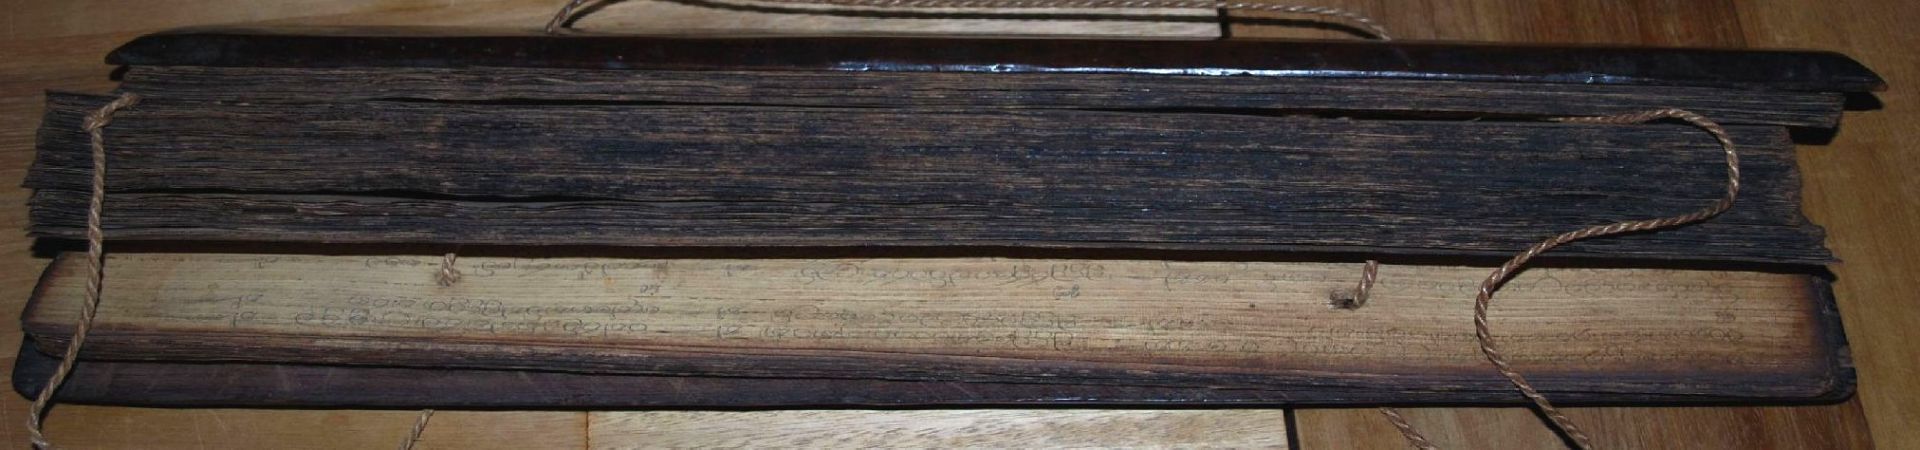 Tibetan. Gebetsbuch, Mantrasmit Bleistift geschrieben, dickes Reispapier mit Holzdeckel, älter?, - Bild 7 aus 9